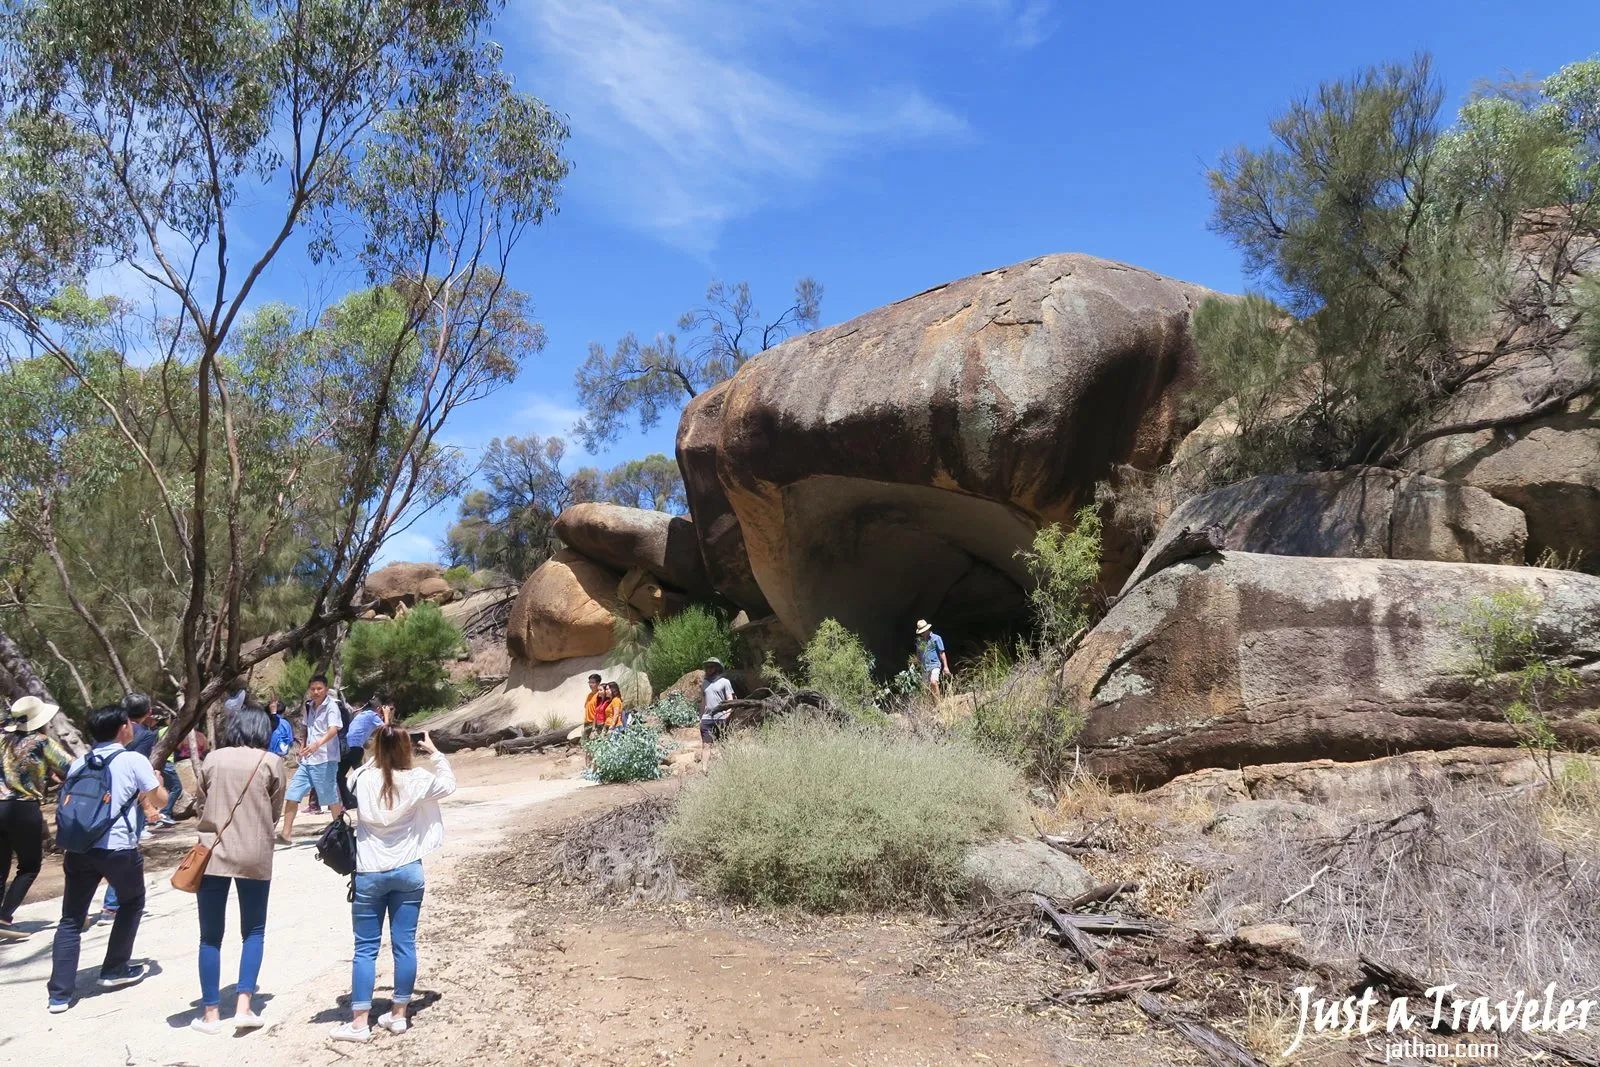 澳洲-西澳-伯斯-推薦-景點-波浪岩-河馬哈欠岩-Hippos Yawn-自由行-旅遊-行程-一日遊-二日遊-遊記-旅遊-觀光-Australia-Perth-Wave-Rock